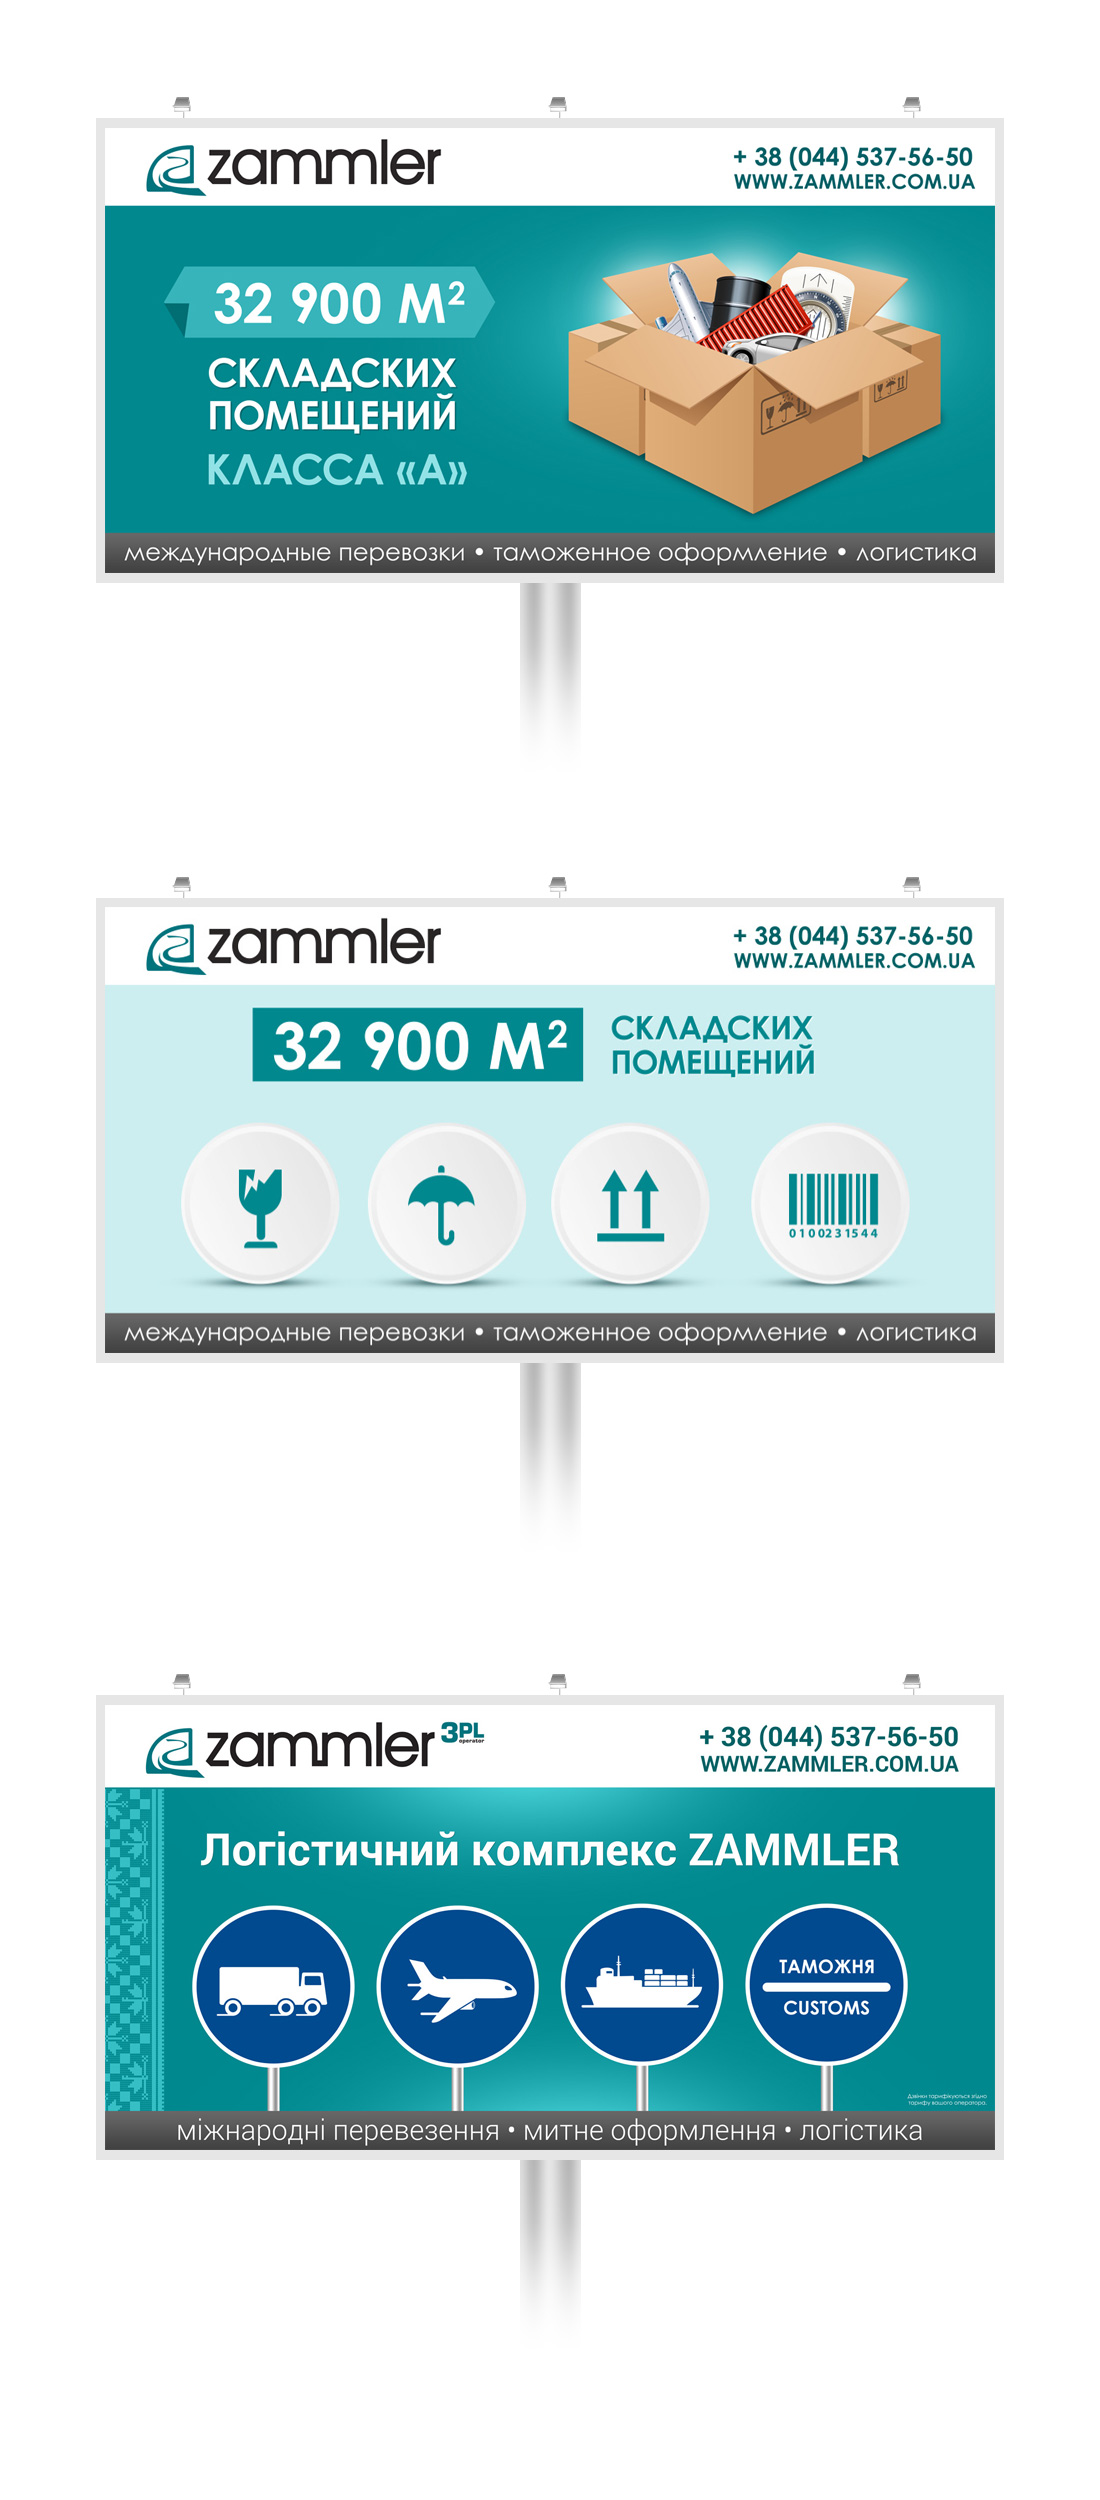 Дизайн бордов для компании Zammler